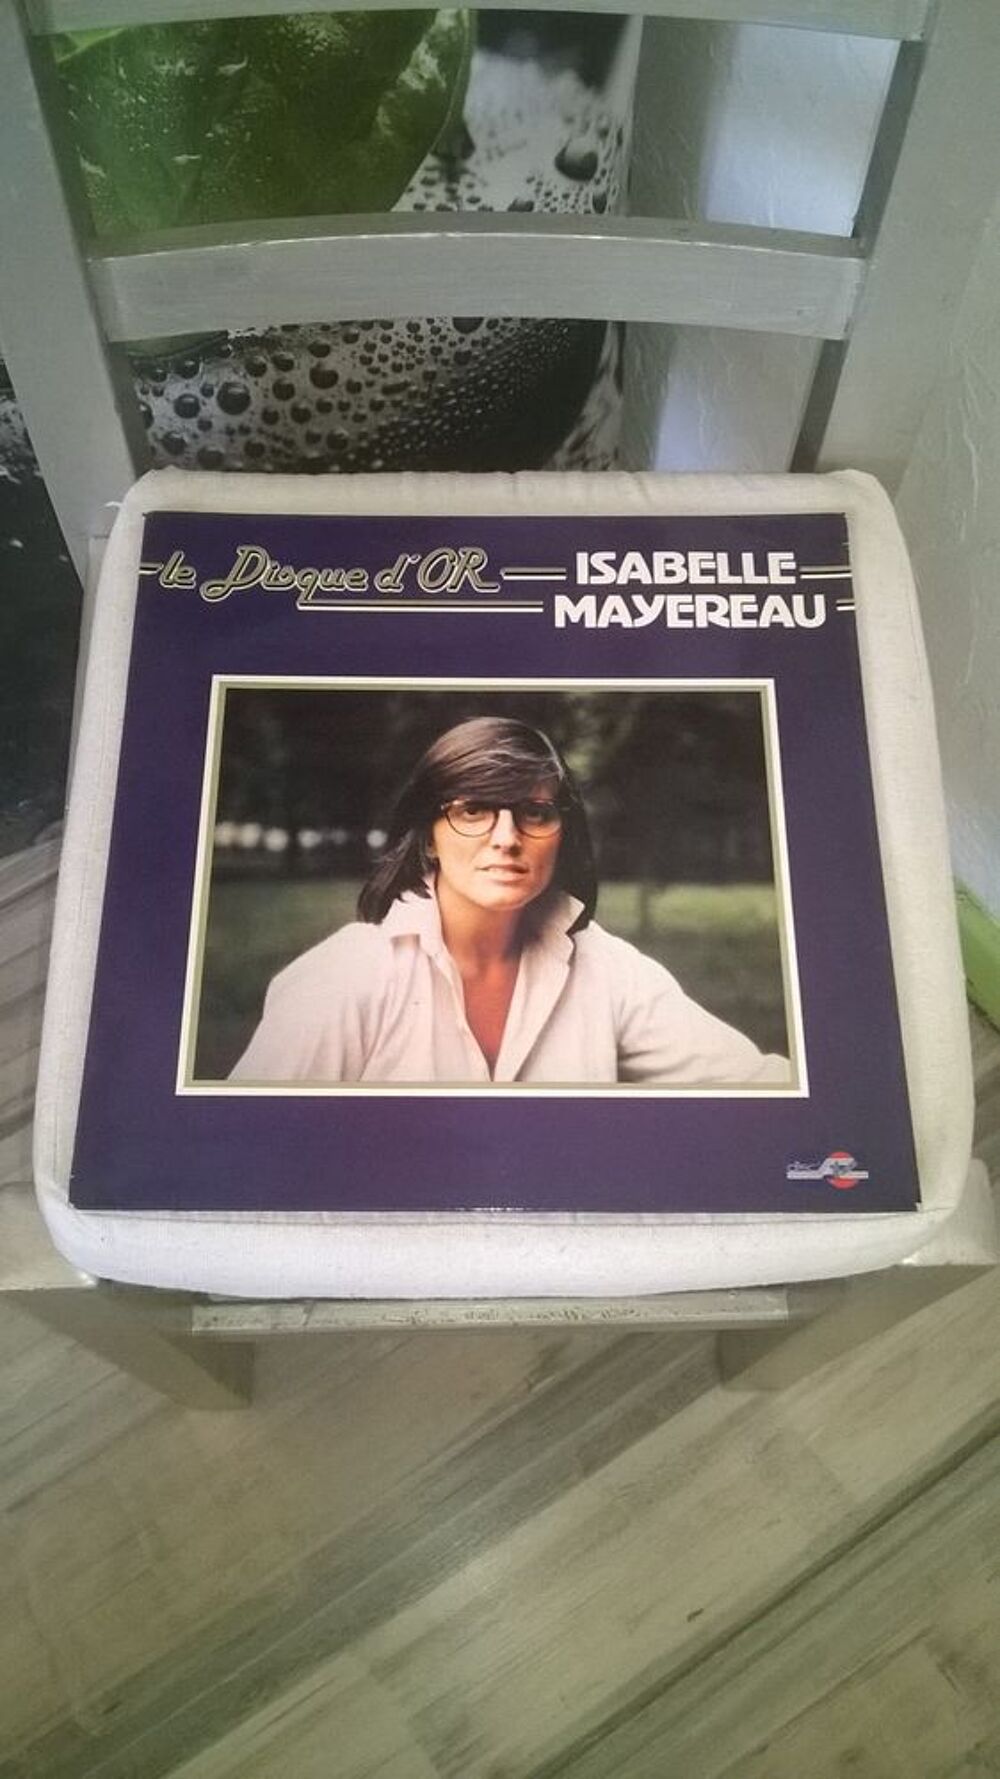 Vinyle Isabelle Mayereau
Le Disque D'Or
1981
Excellent et CD et vinyles